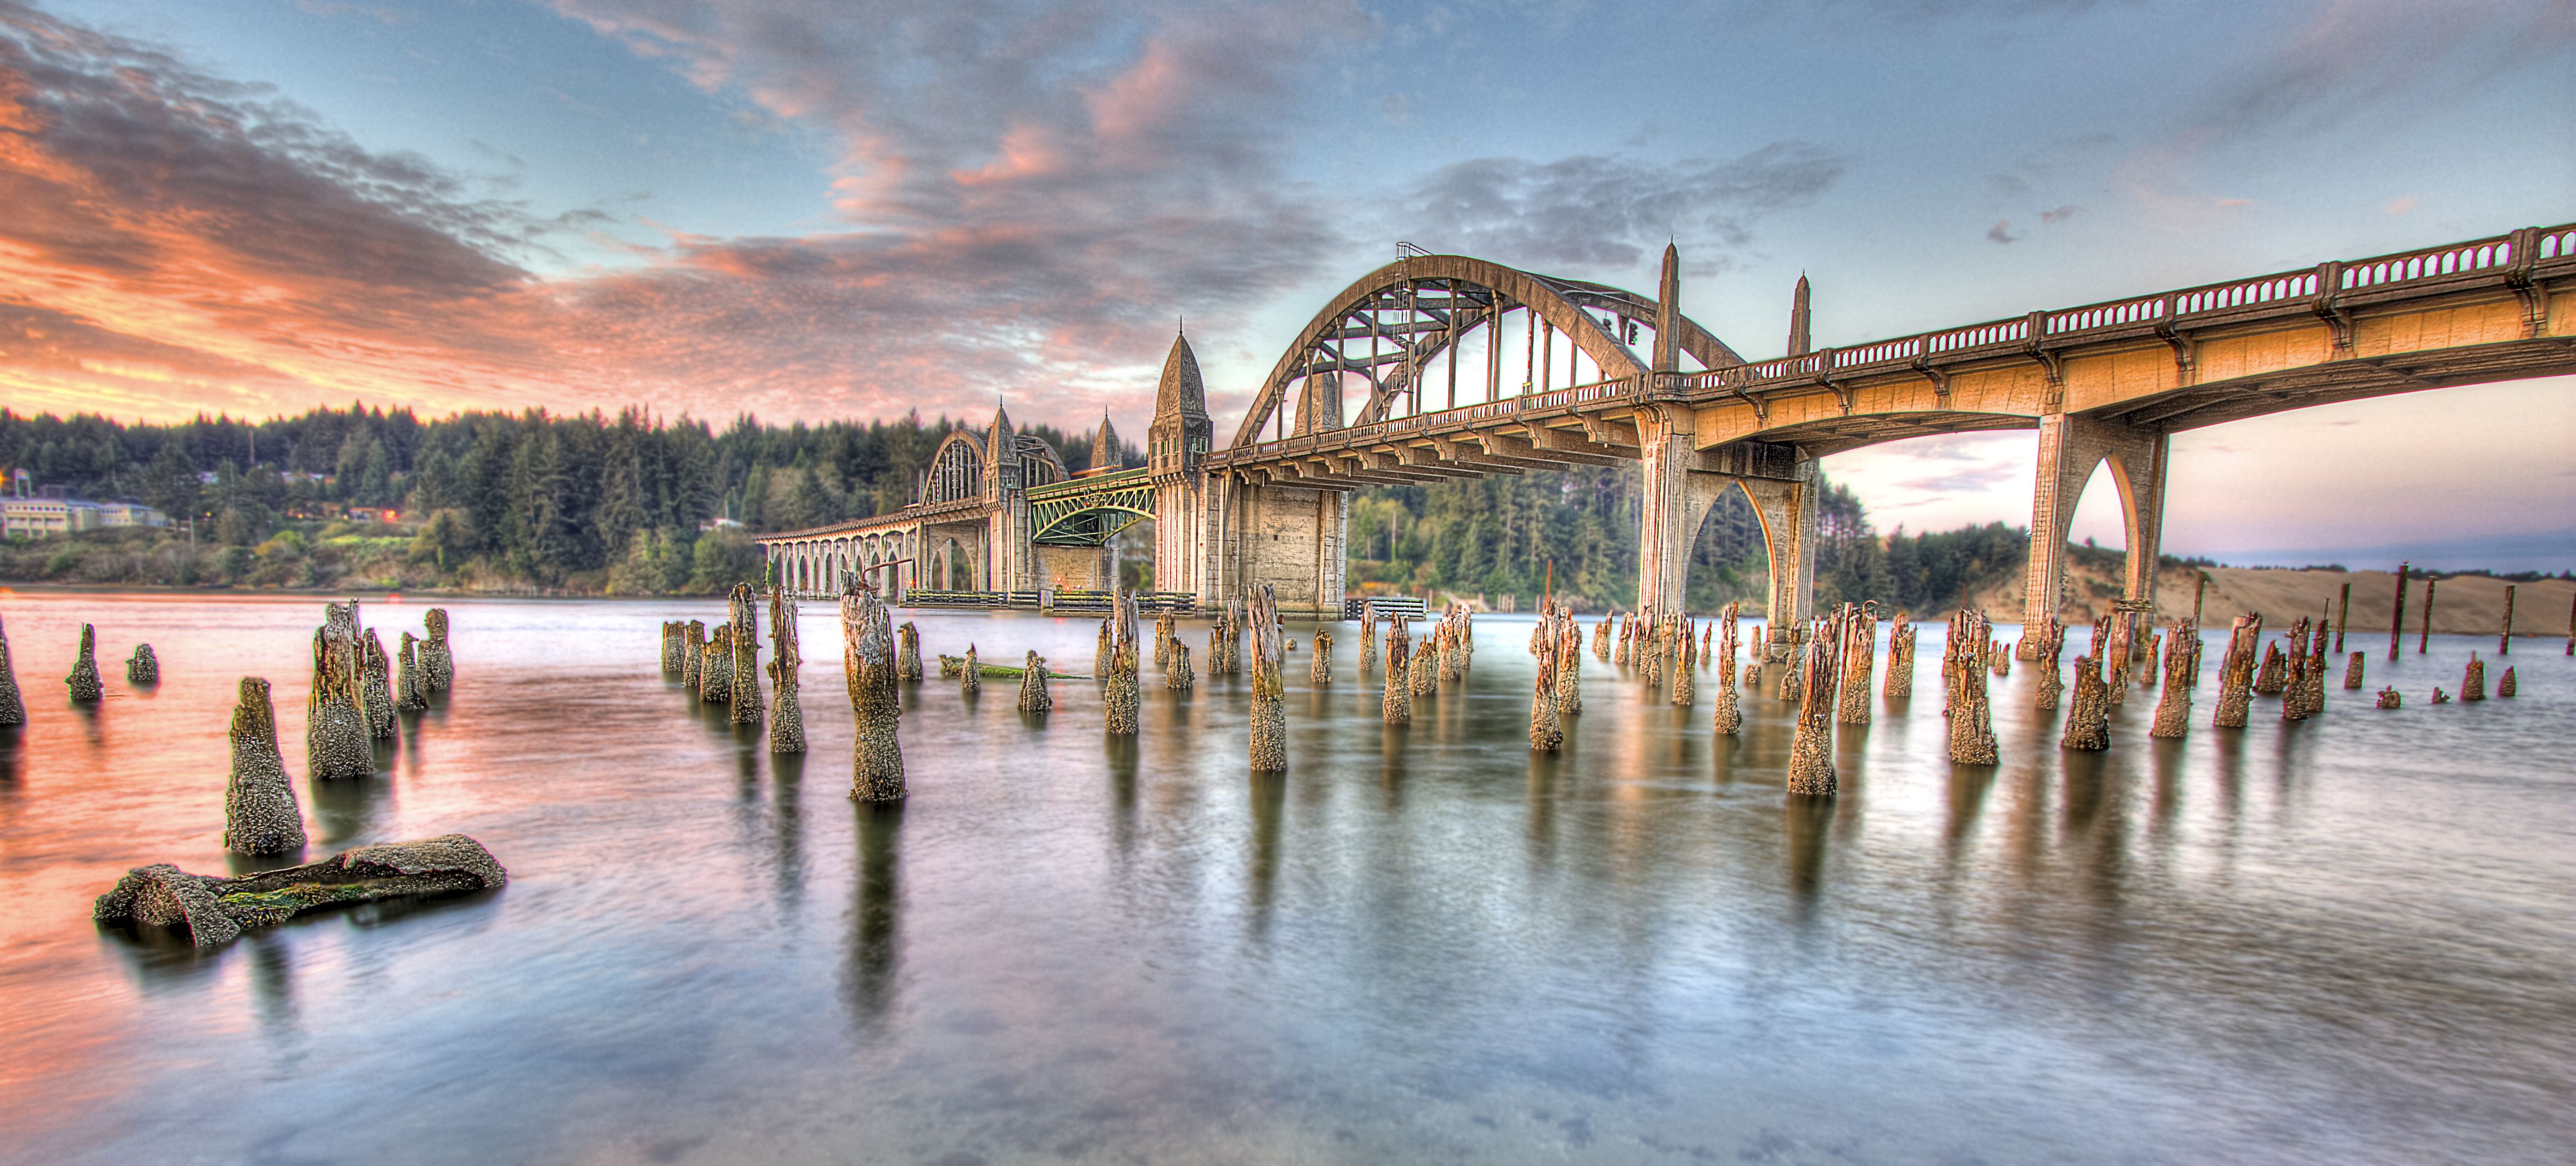 Suislaw Bridge in Oregon